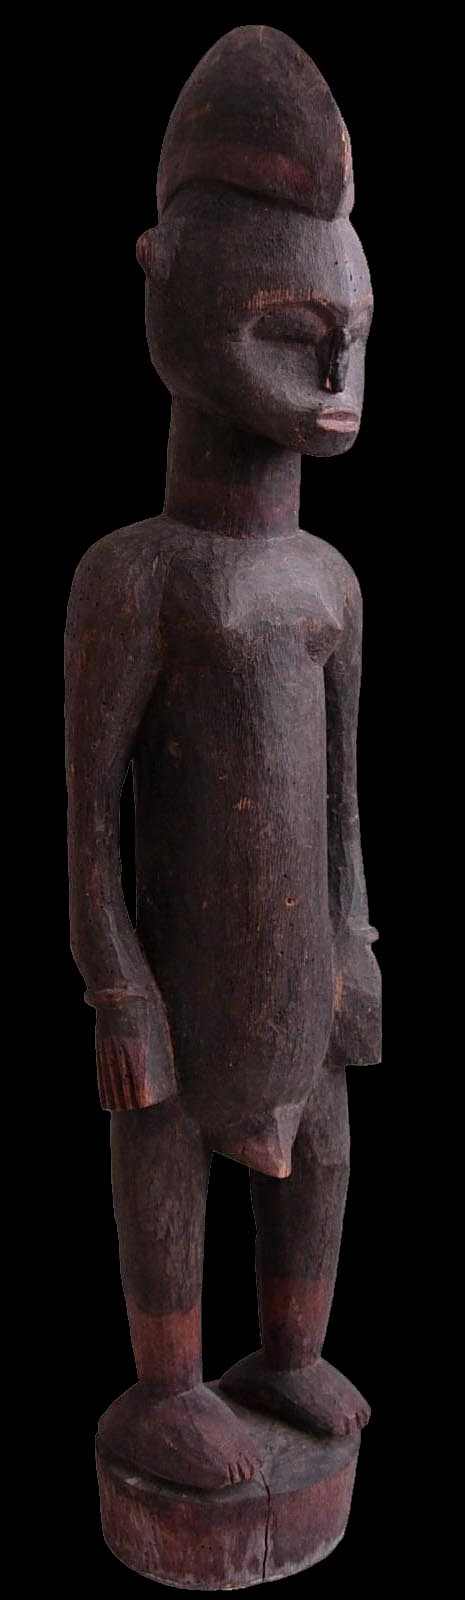 Statuette Senoufo (c) Musée Borias